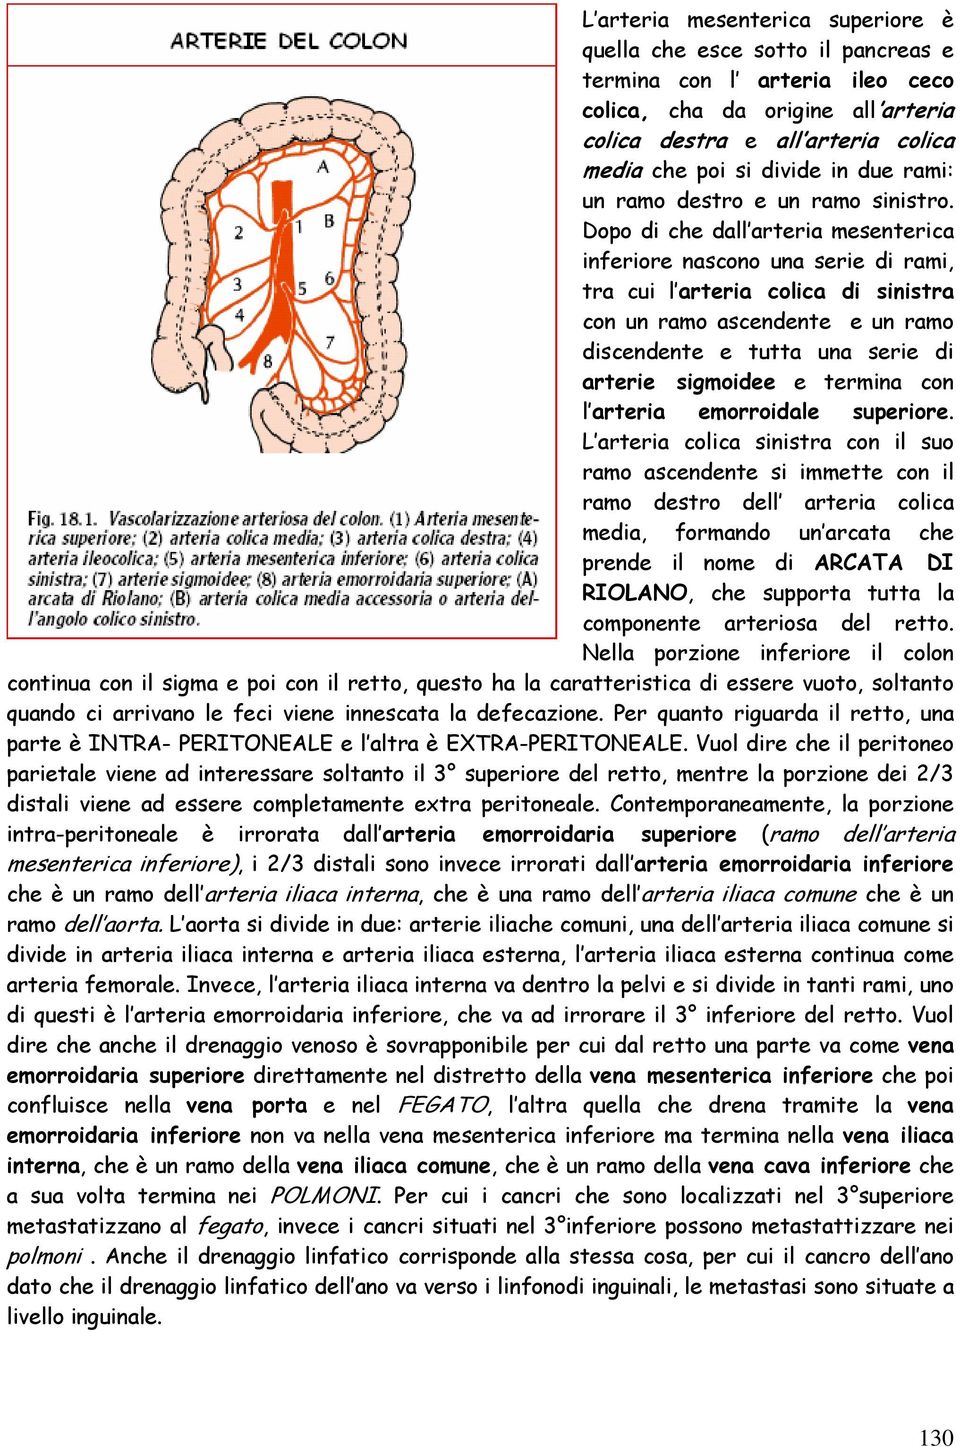 Dopo di che dall arteria mesenterica inferiore nascono una serie di rami, tra cui l arteria colica di sinistra con un ramo ascendente e un ramo discendente e tutta una serie di arterie sigmoidee e